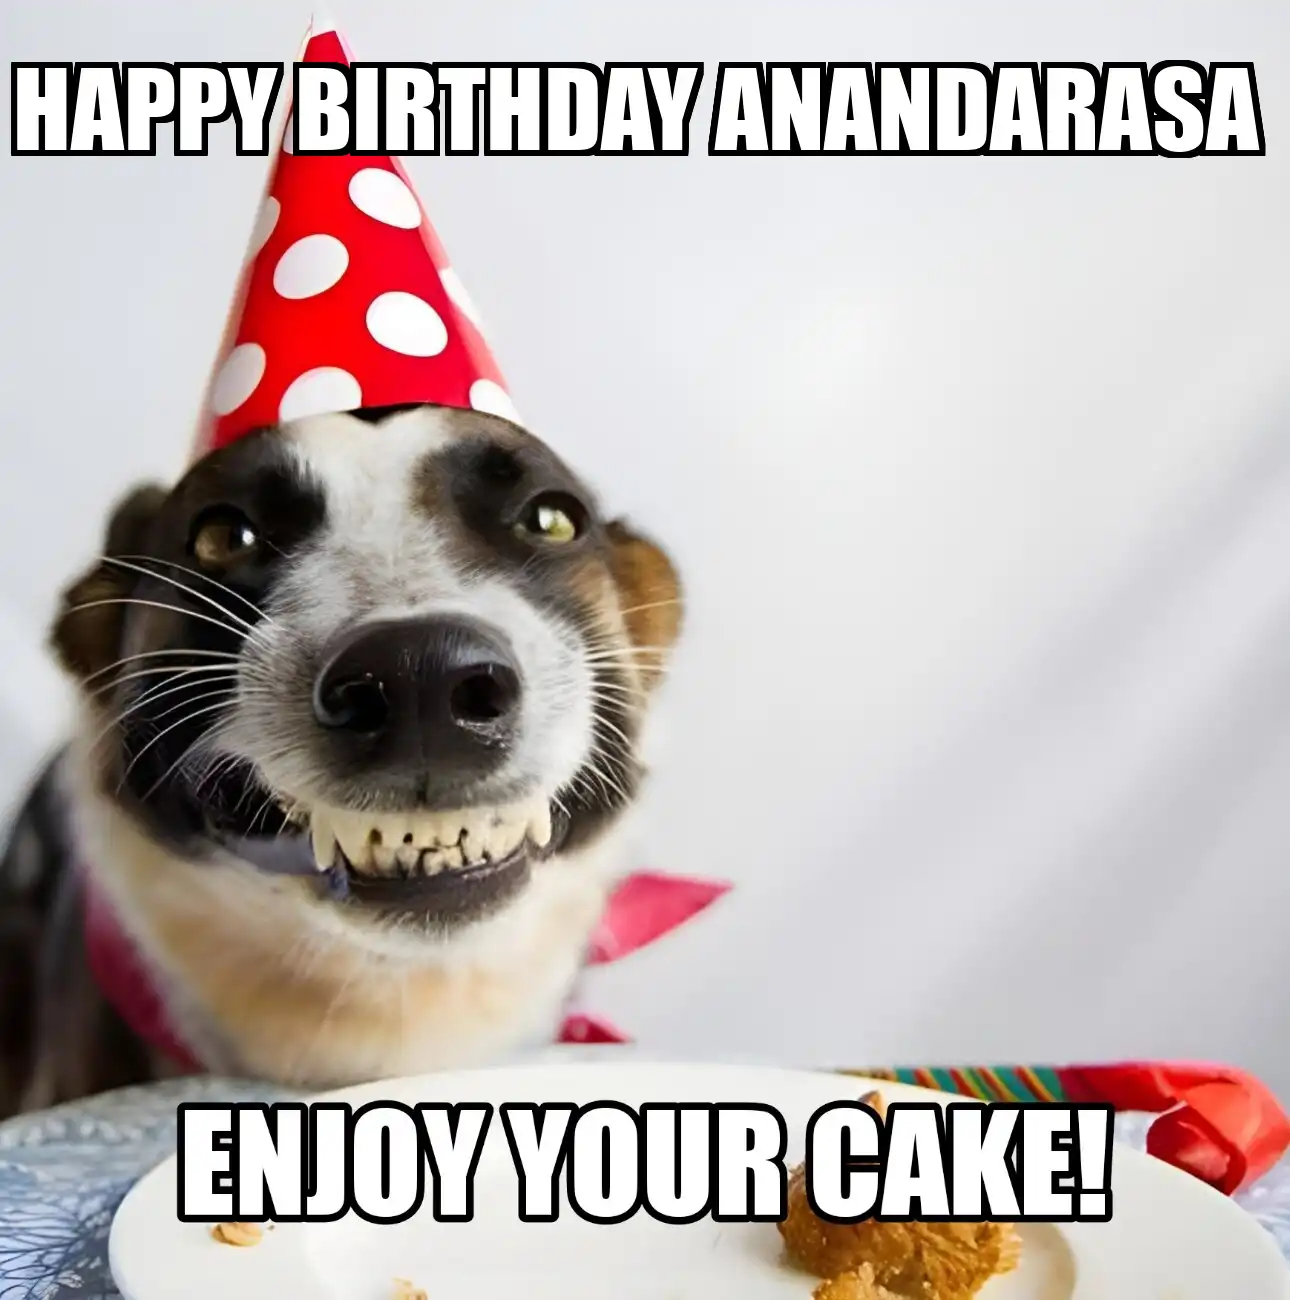 Happy Birthday Anandarasa Enjoy Your Cake Dog Meme